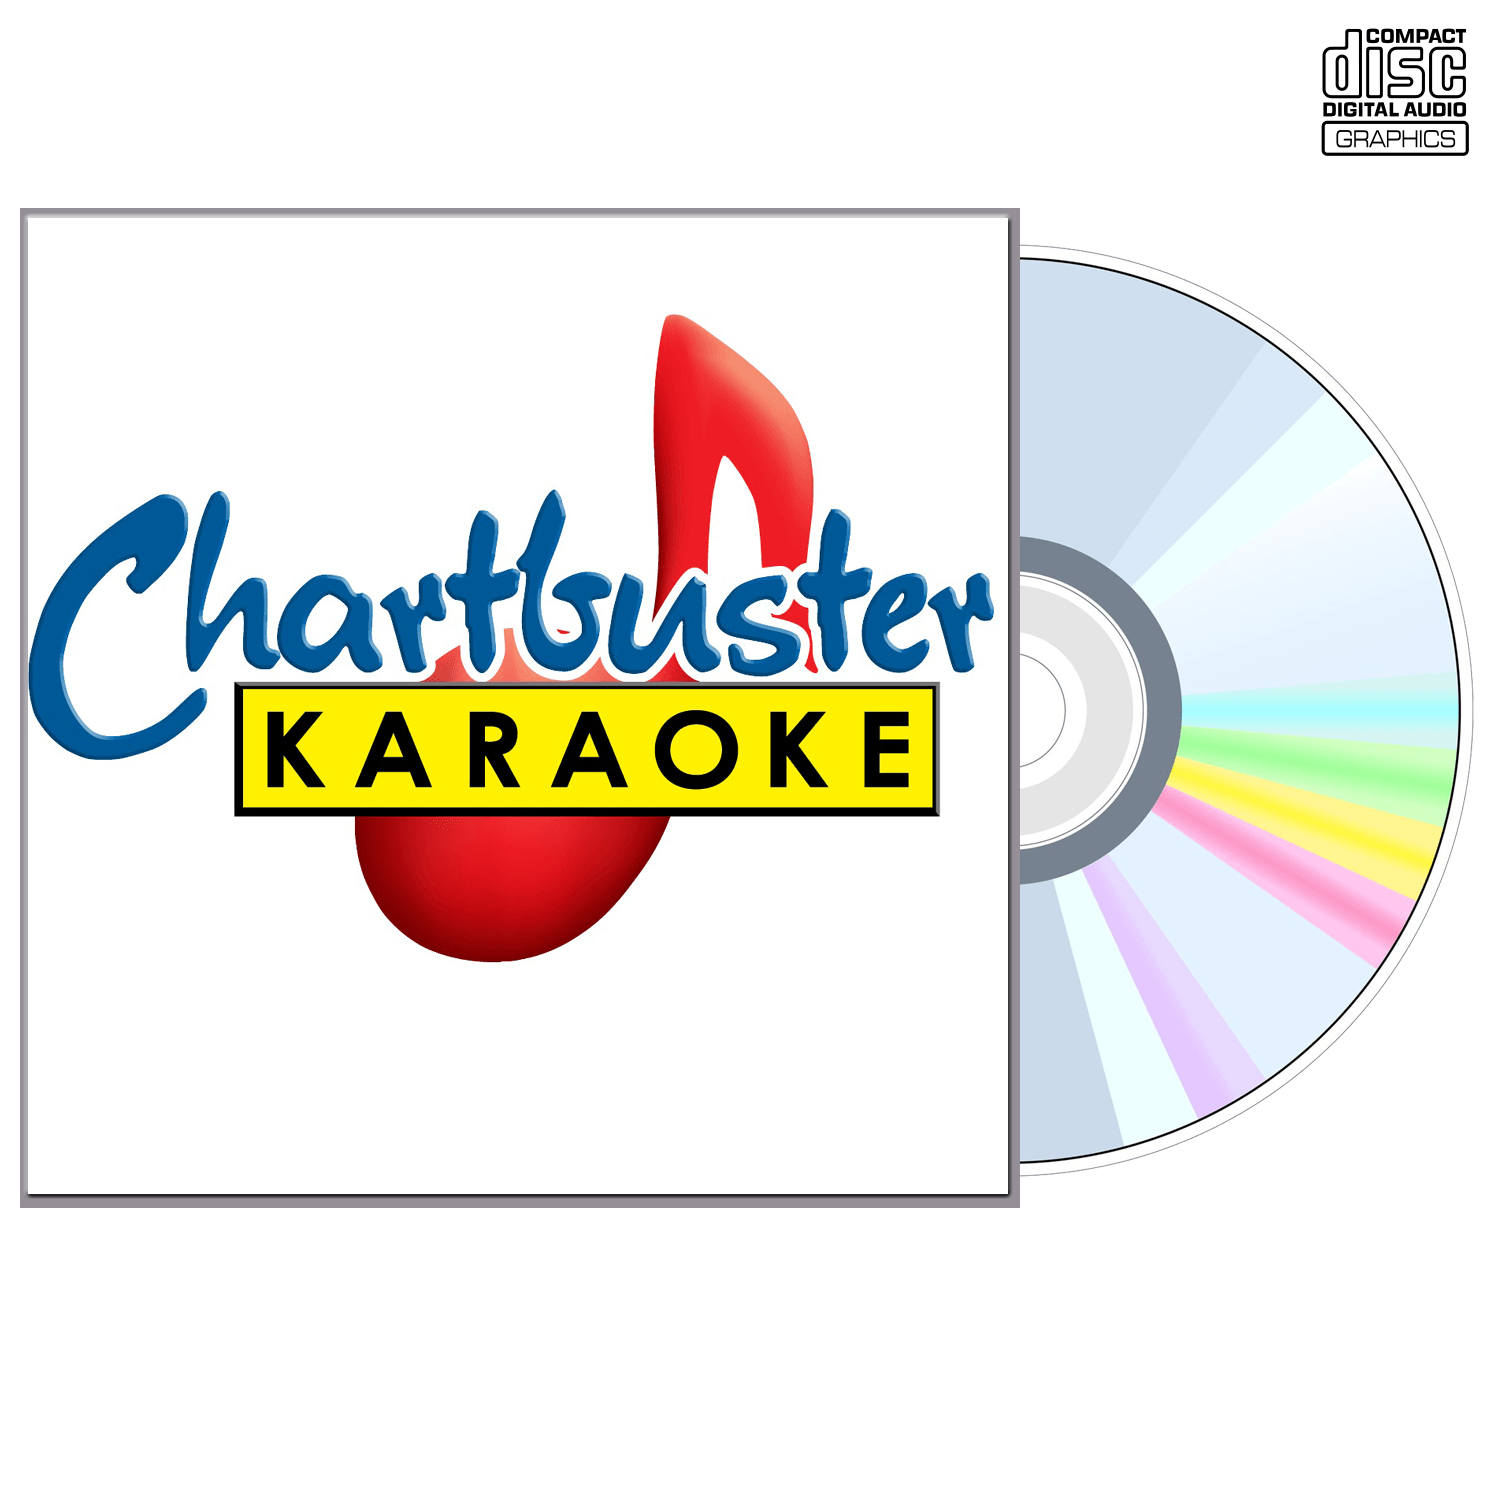 Backstreet Boys Vol 2 - CD+G - Chartbuster Karaoke - Karaoke Home Entertainment